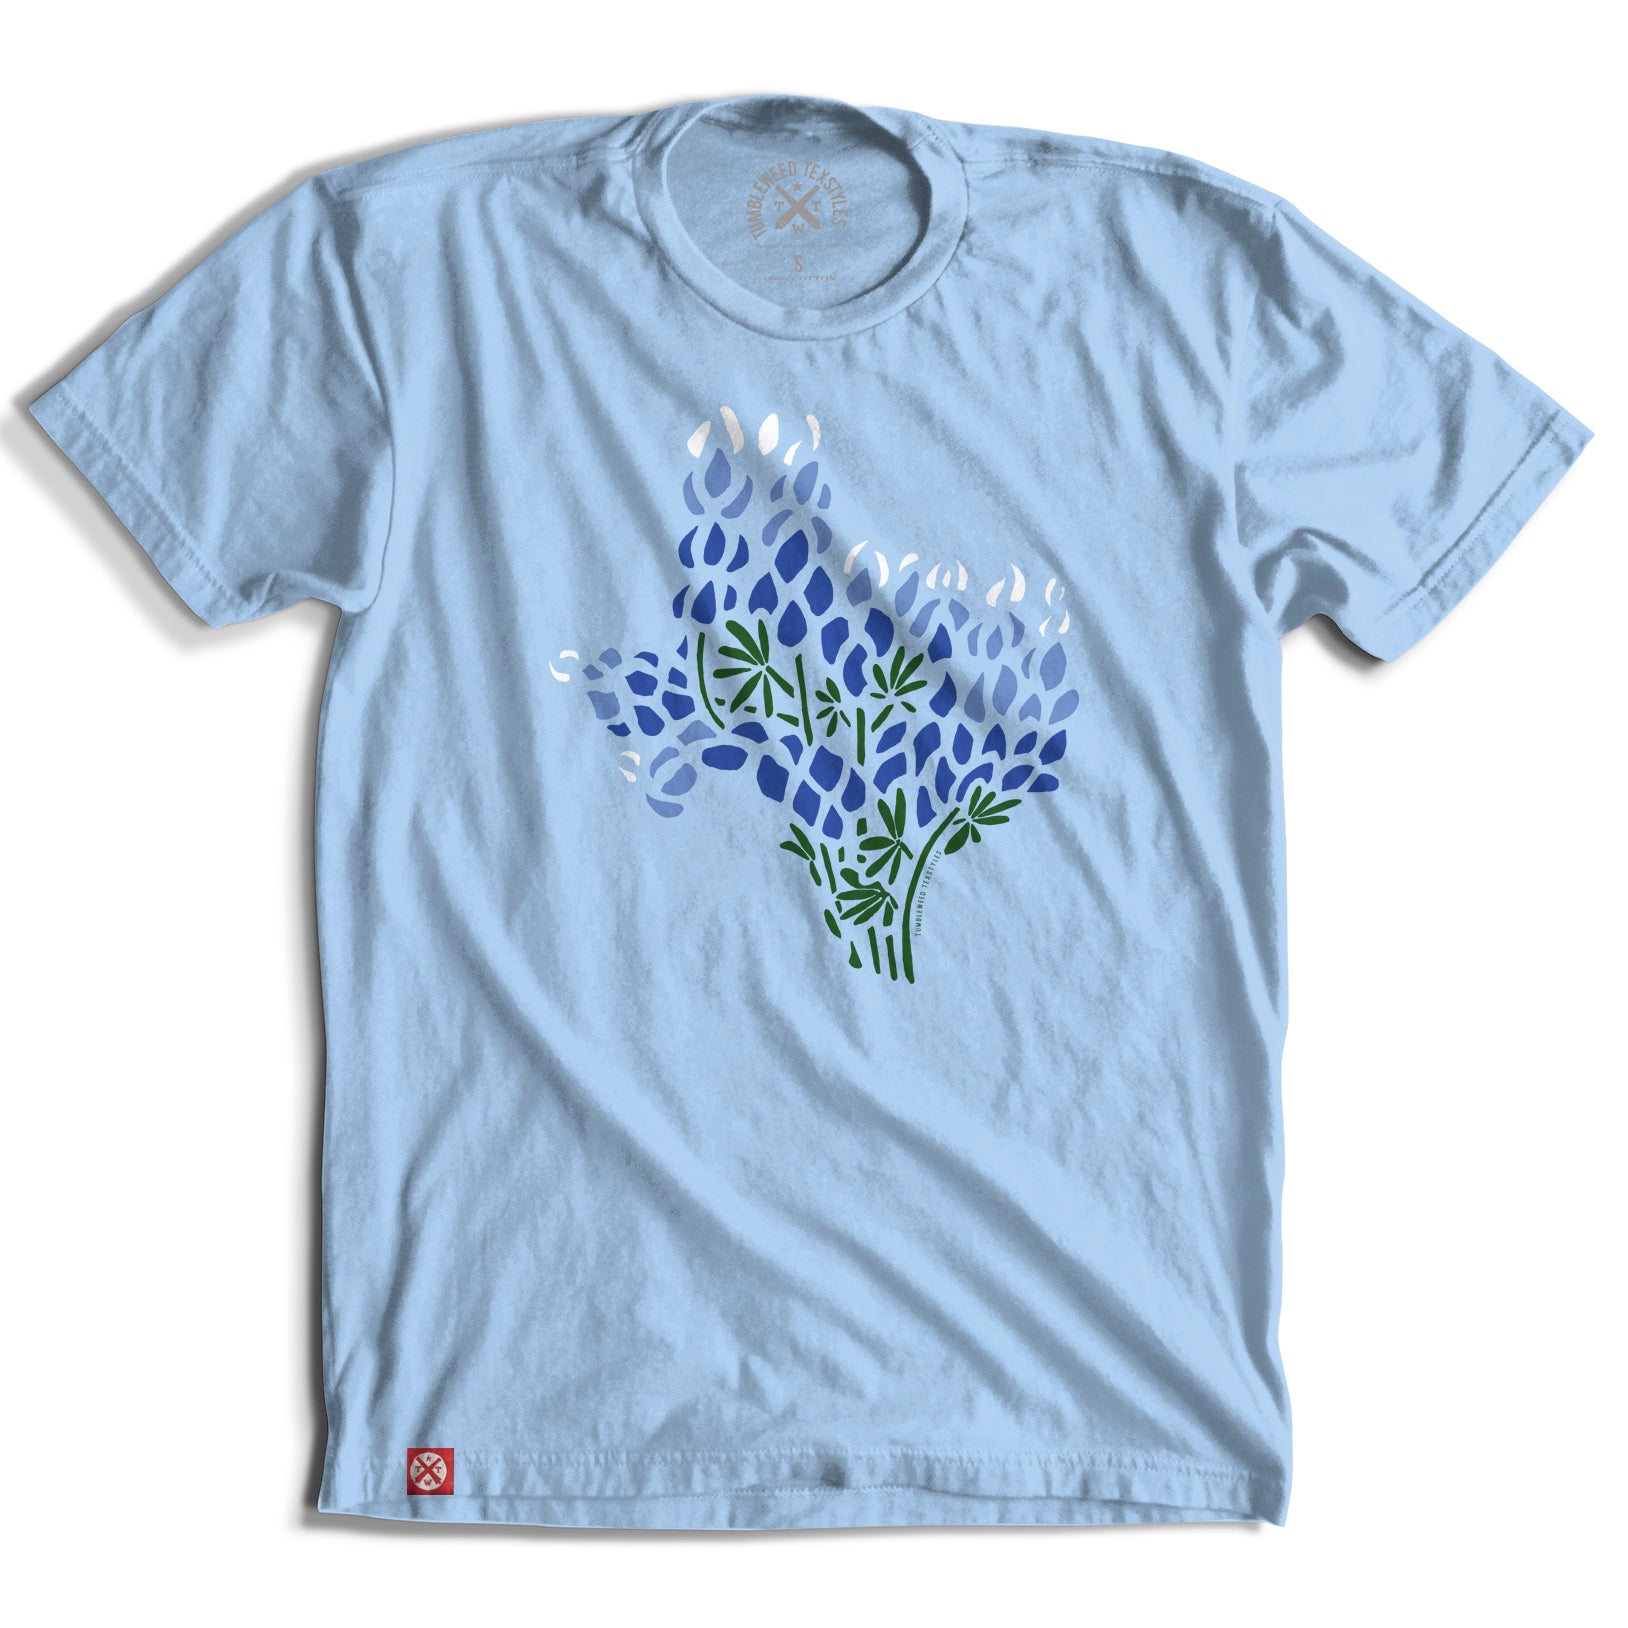 Bluebonnet T-Shirt